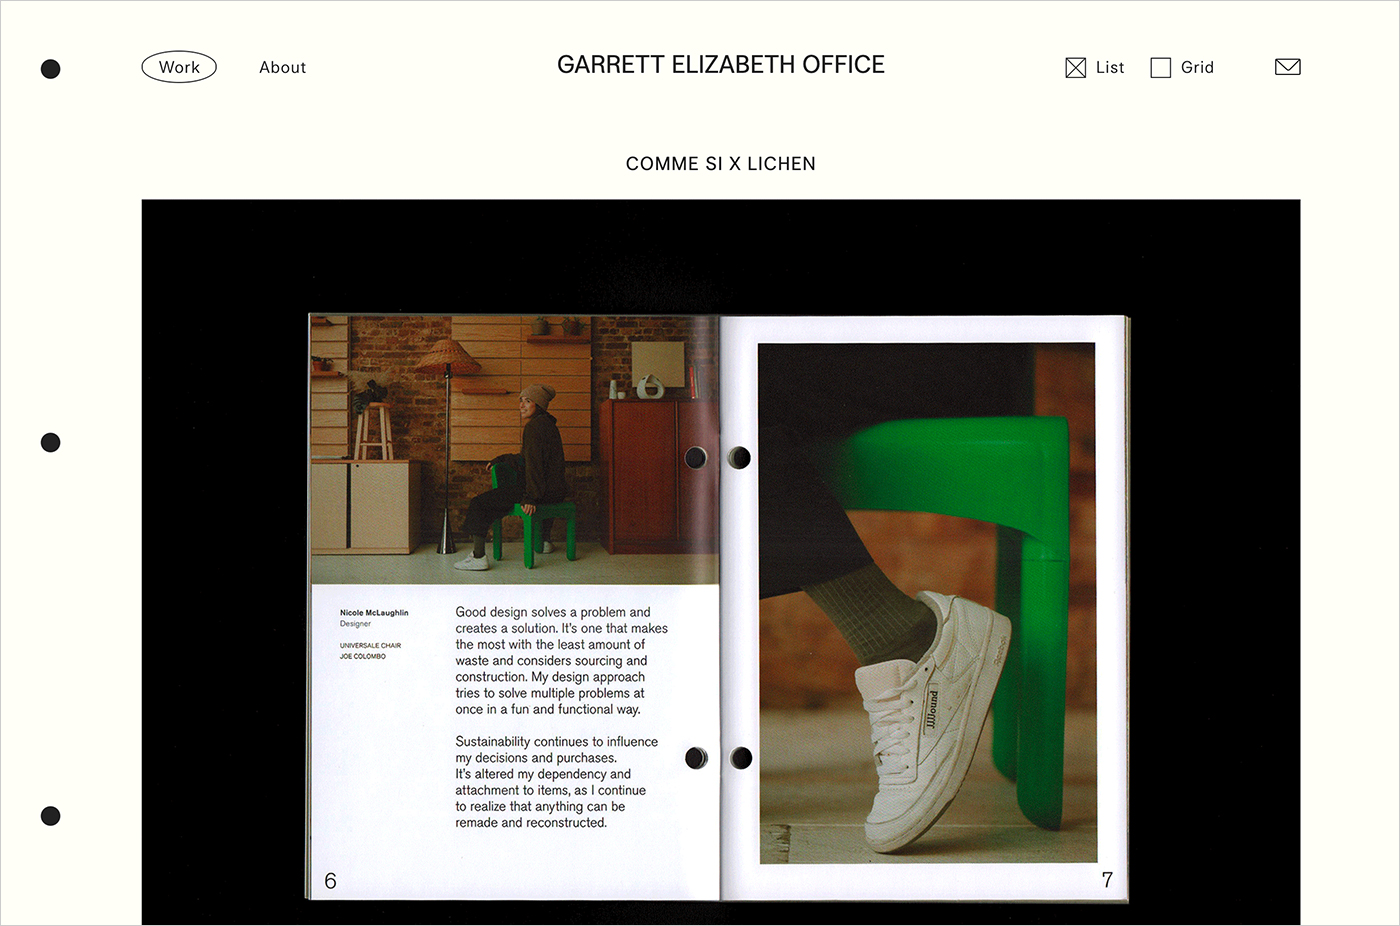 Garrett Elizabeth Officeウェブサイトの画面キャプチャ画像